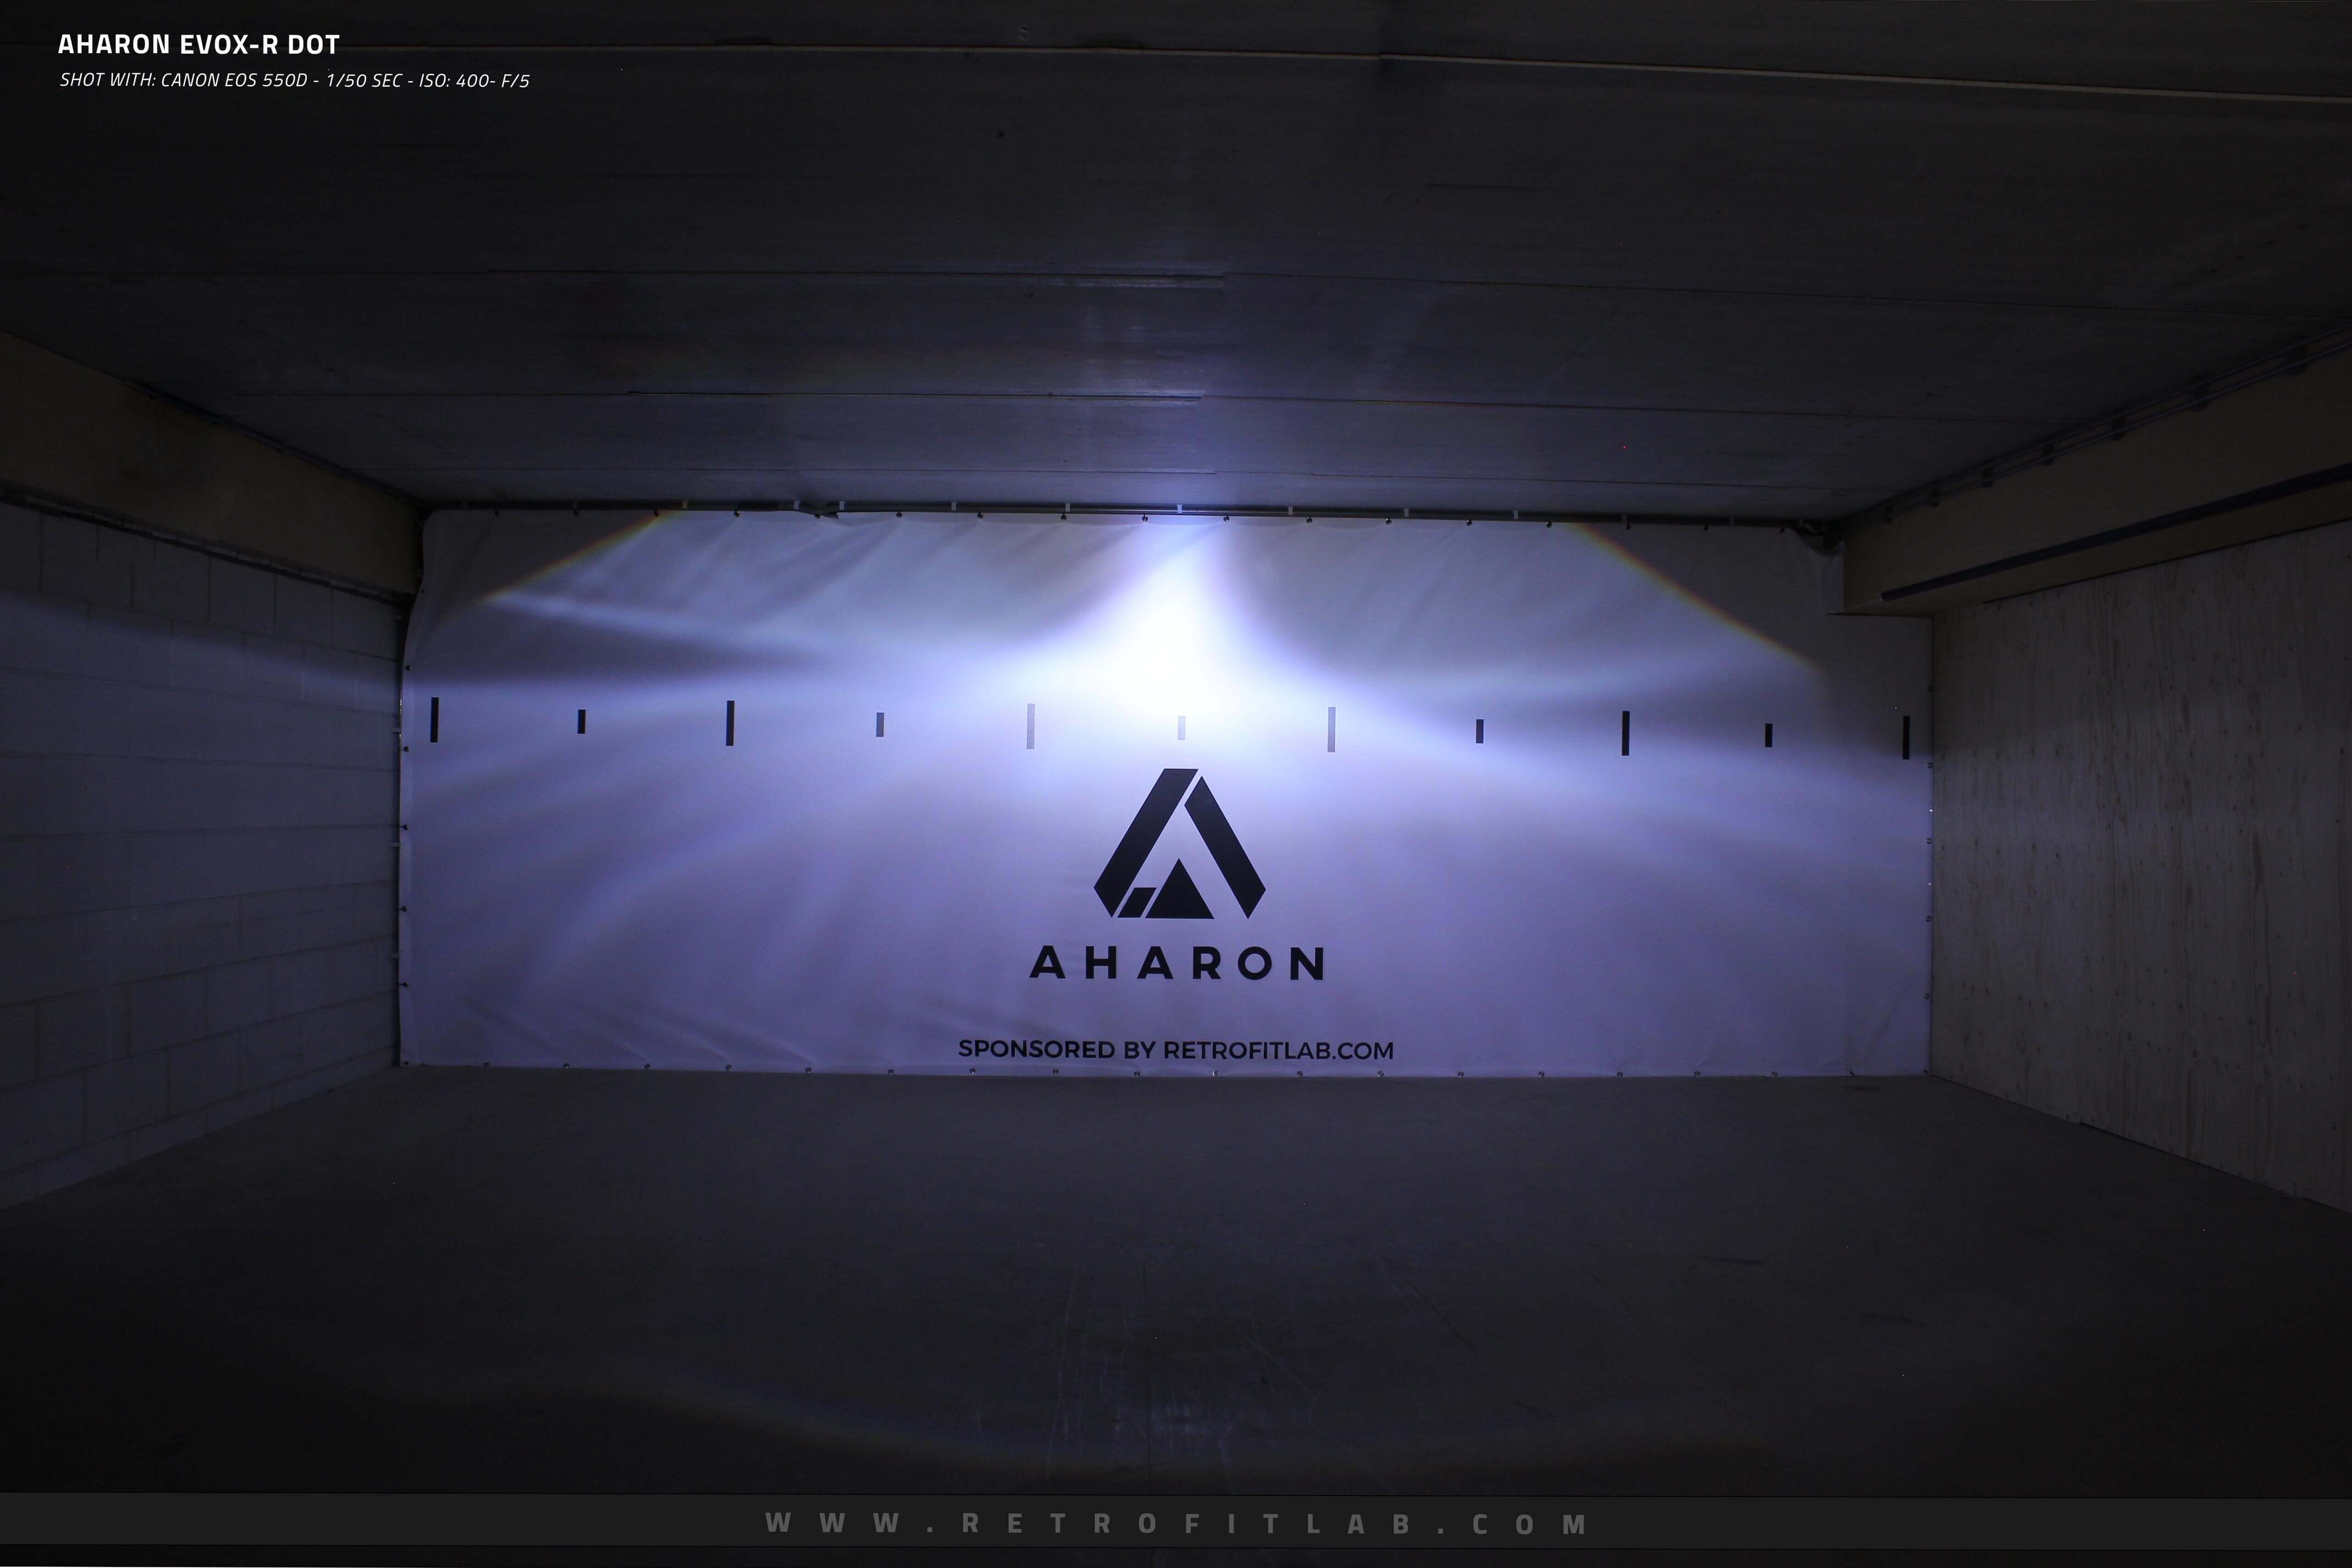 Aharon EvoX-R Bi-xenon projectors Hella design